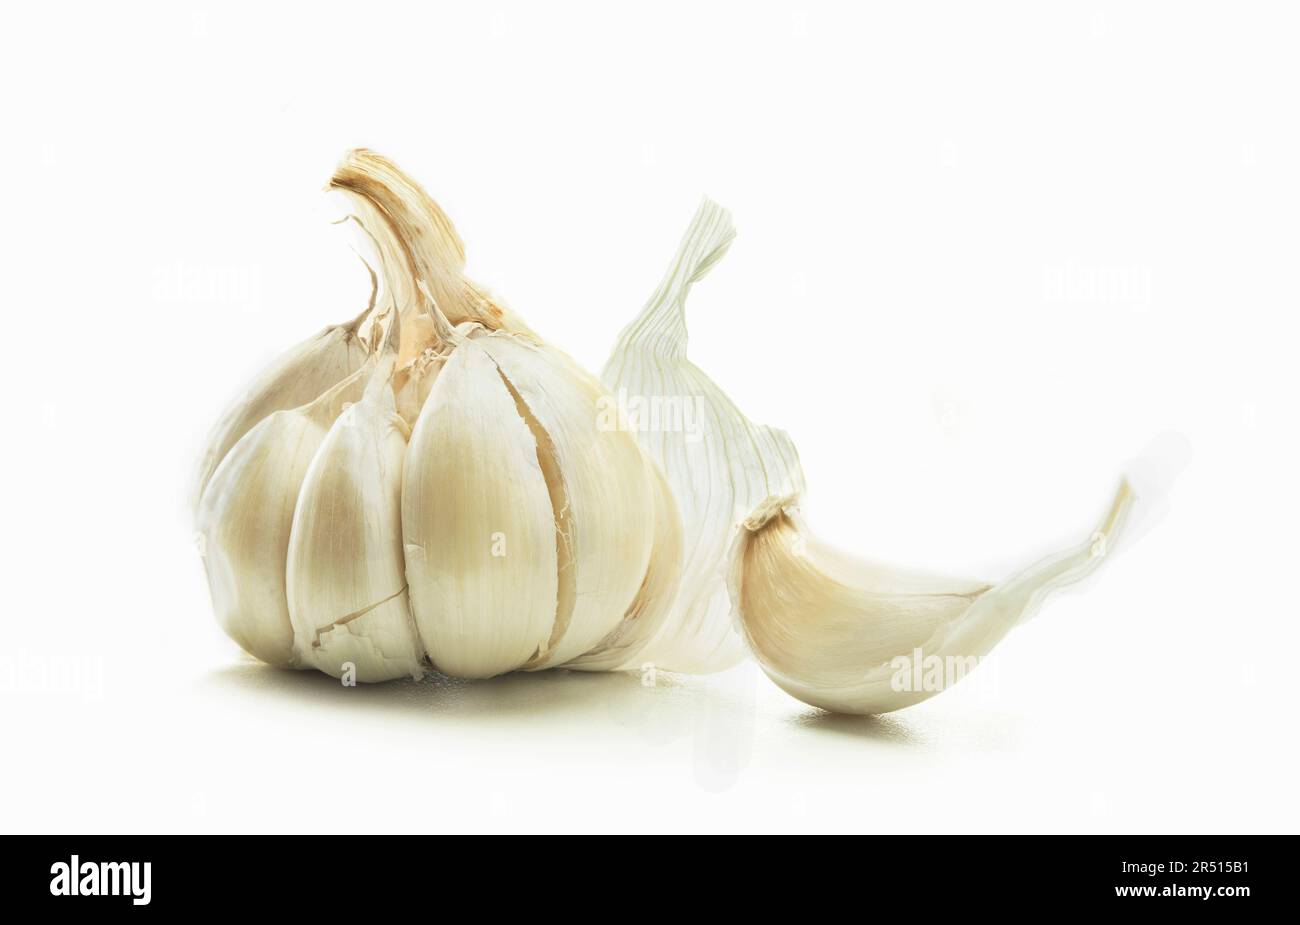 Bulbo d'aglio e uno spicchio d'aglio su fondo bianco Foto Stock